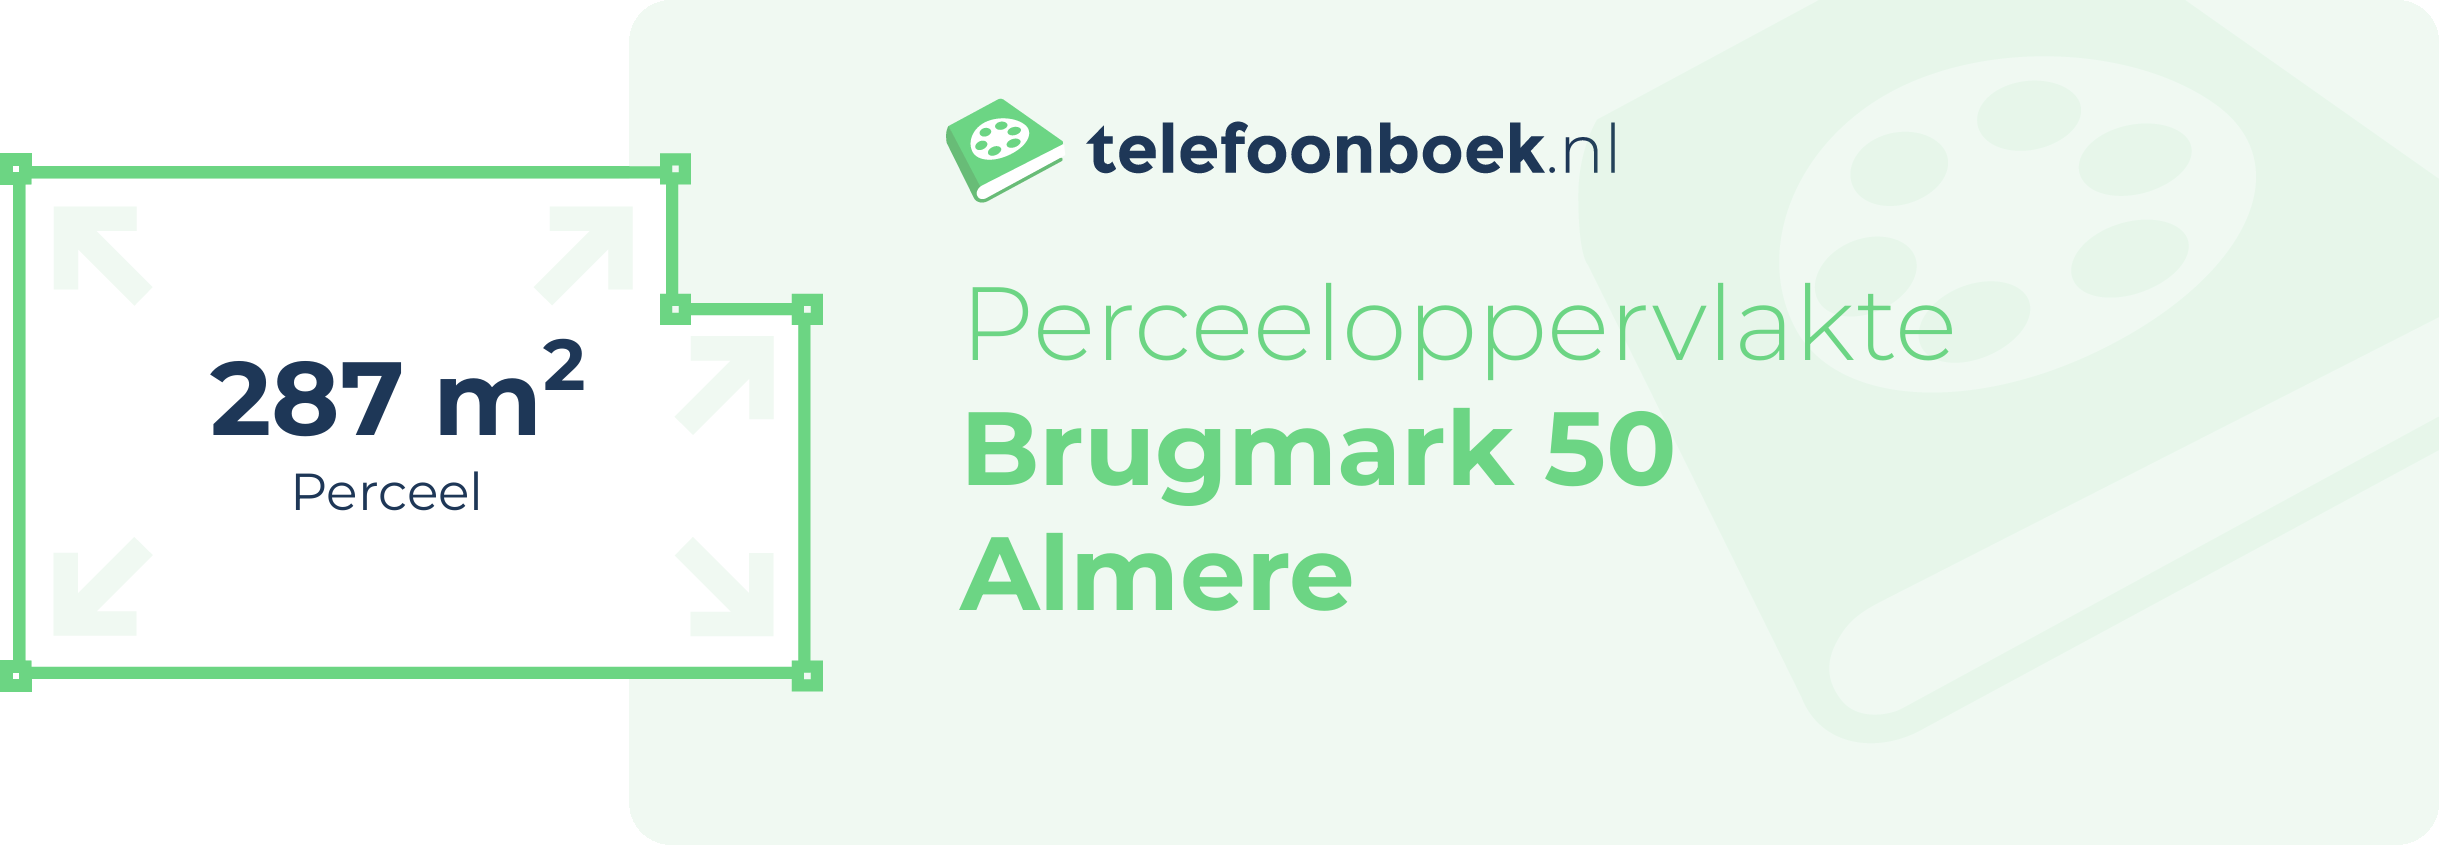 Perceeloppervlakte Brugmark 50 Almere